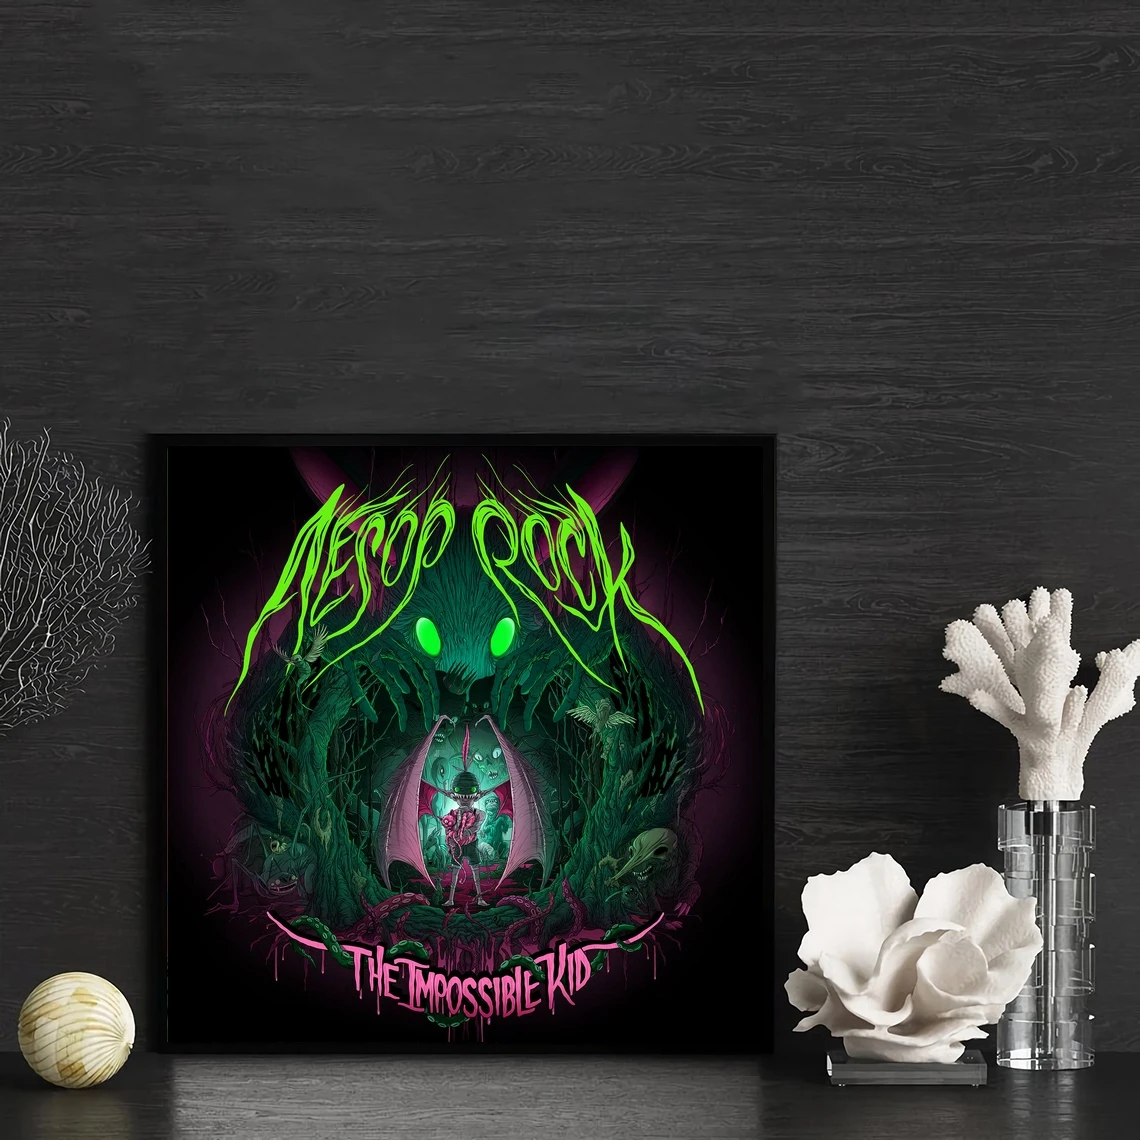 

Aesop Rock The Impossible Kid Music альбом, Обложка, постер, холст, Художественная печать, домашний декор, настенная живопись (без рамки)